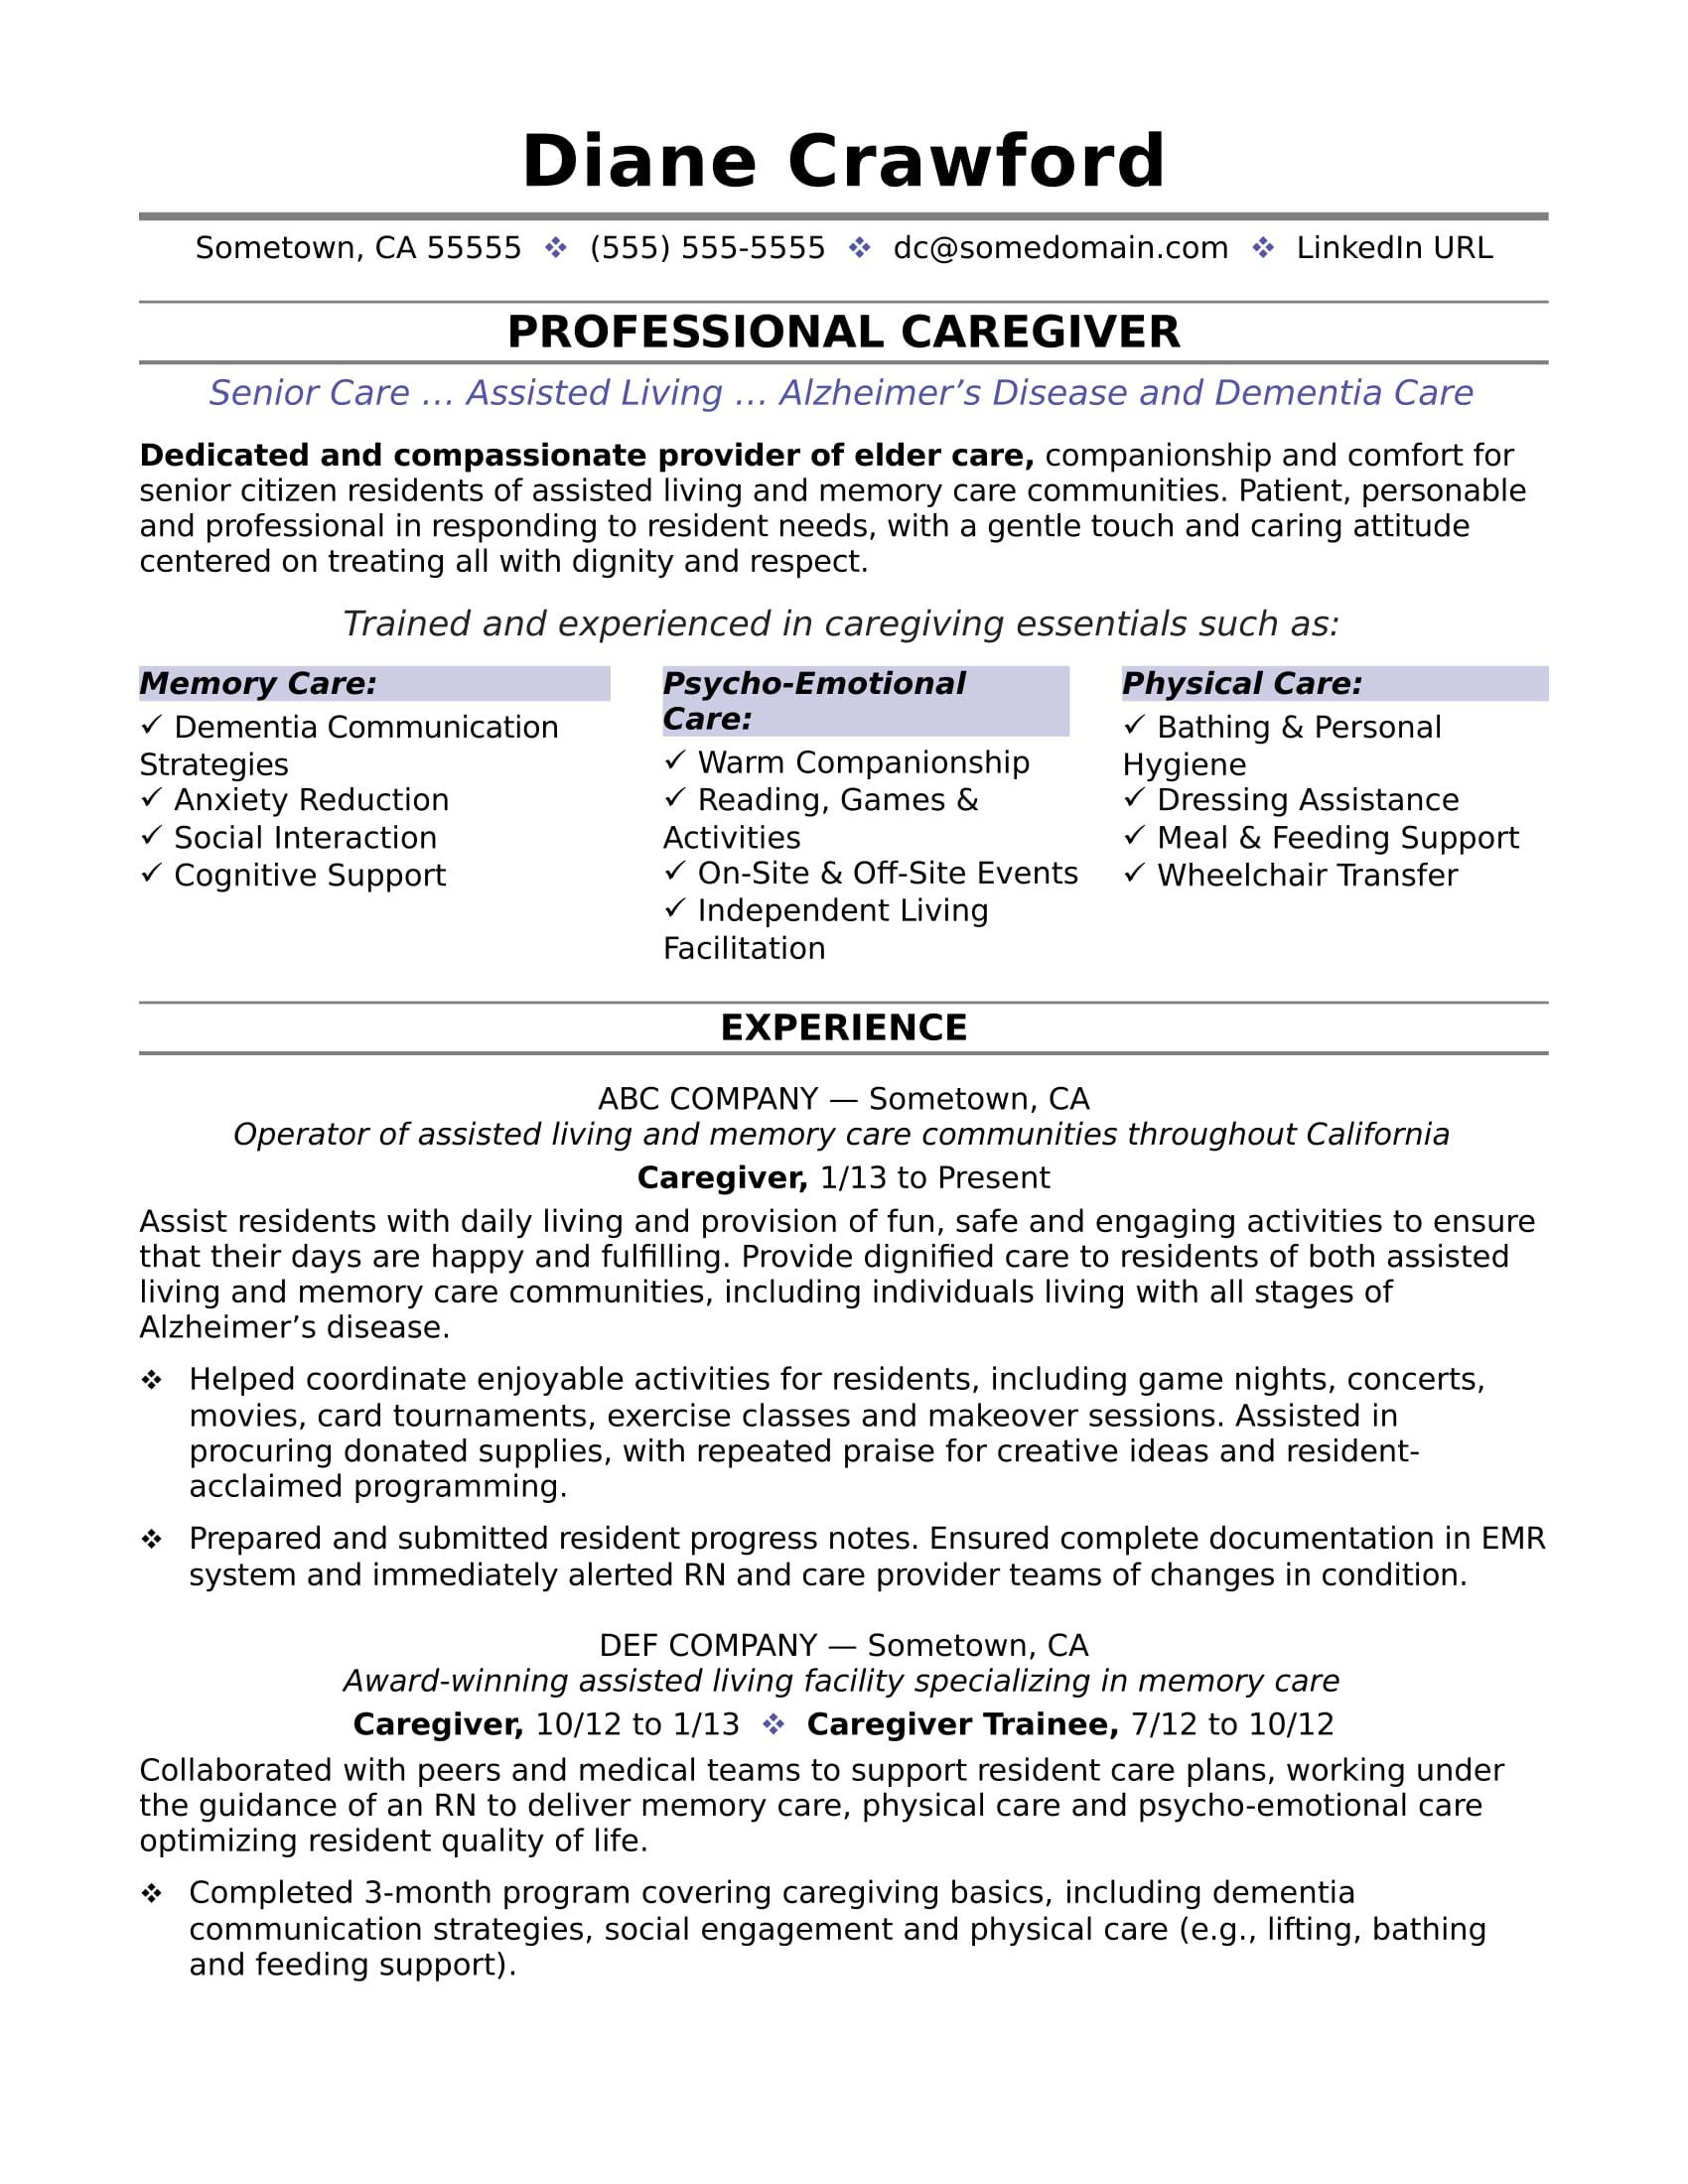 Resume Templates for Older Job Seekers Caregiver Resume Sample Monster.com